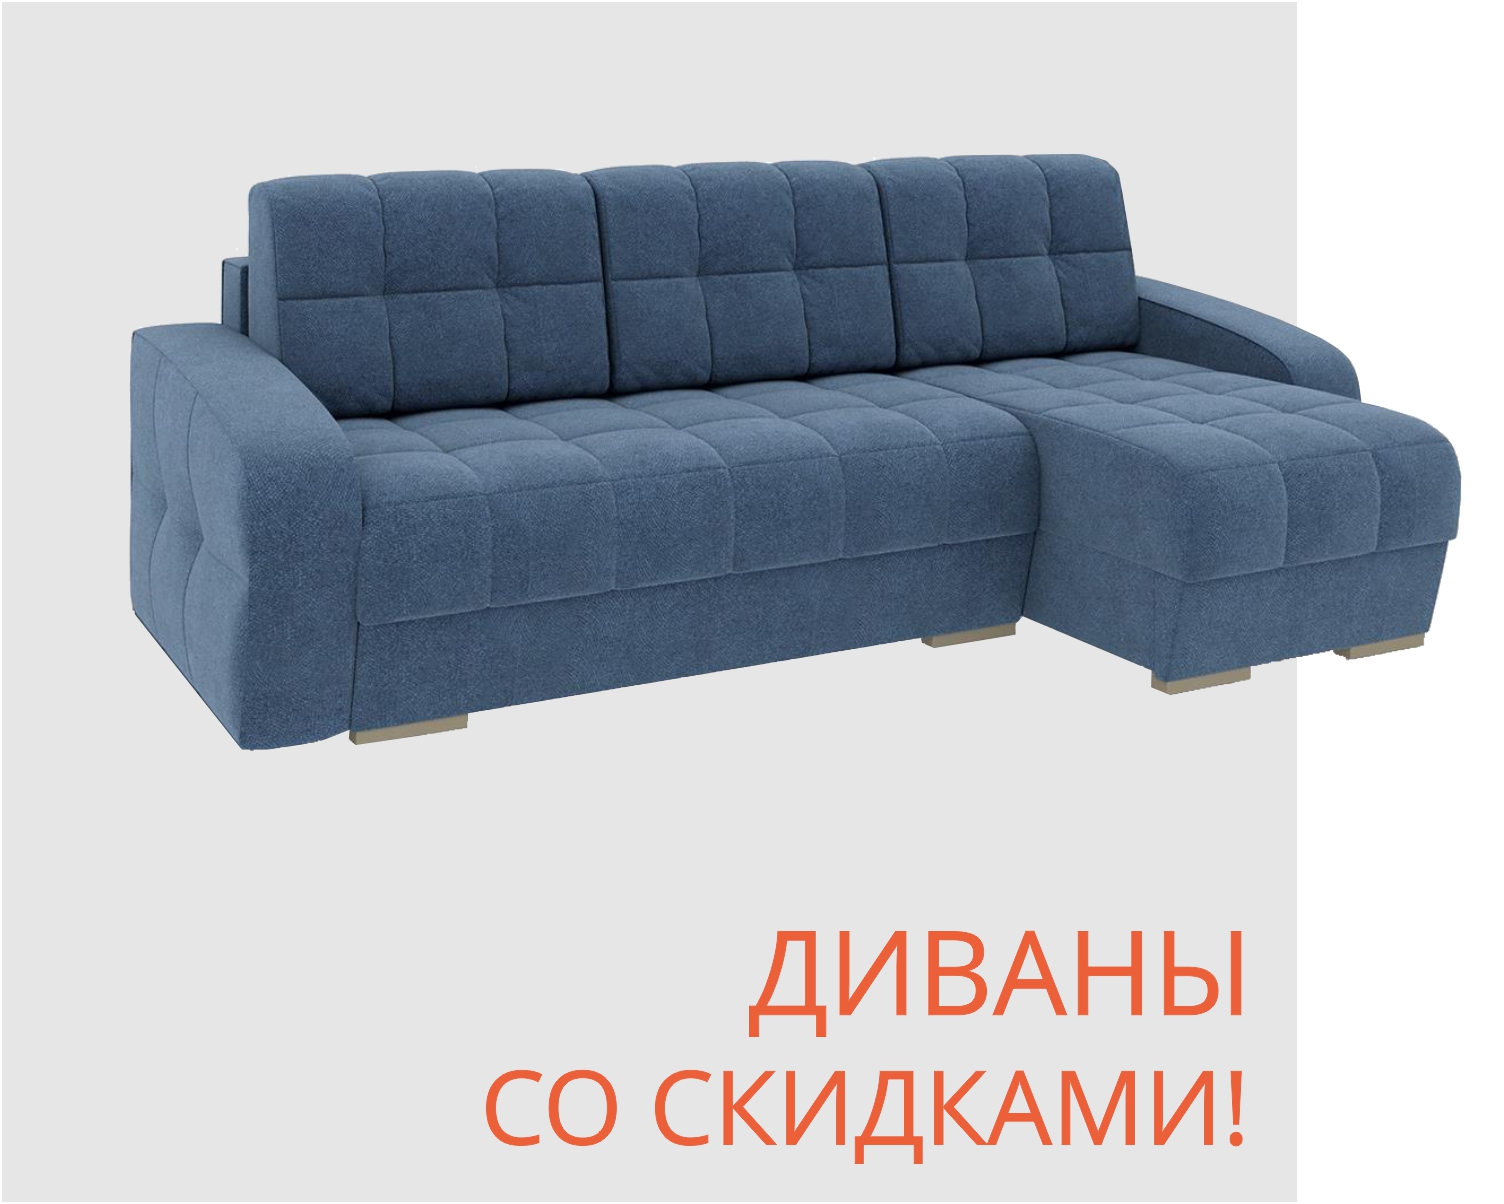 Мебельный Магазин В Минске Цены